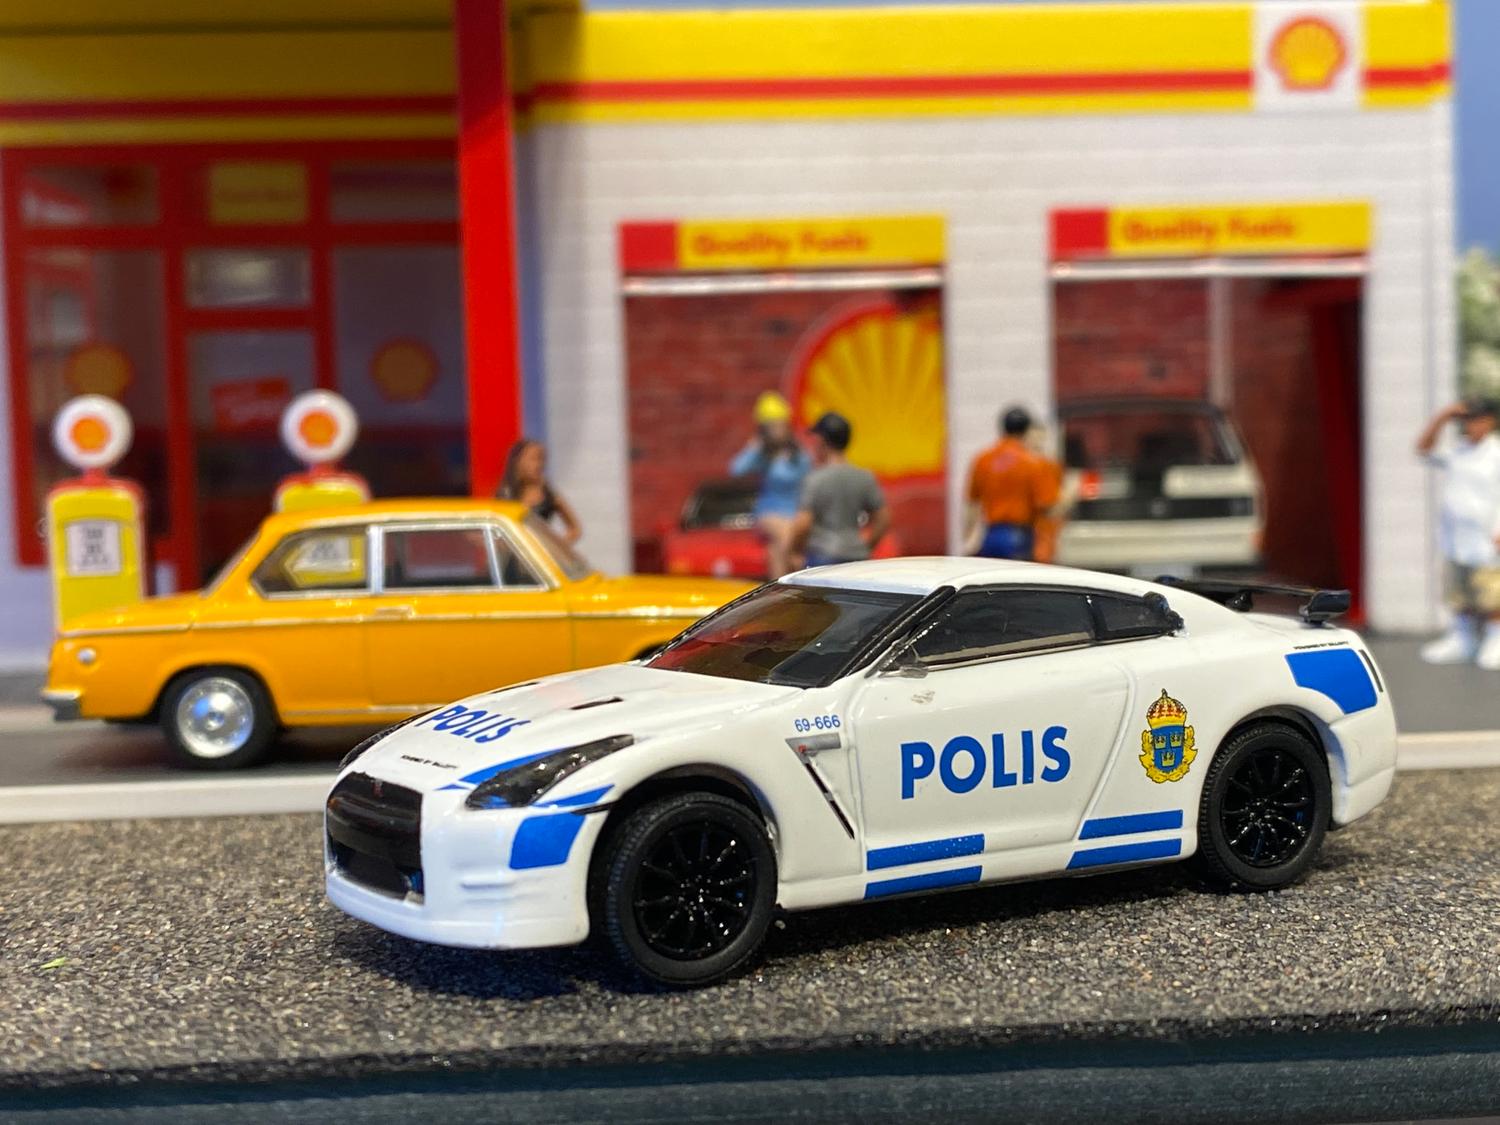 Skala 1/64 Nissan GT-R (R35) Svensk Polis Stockholm "Hot Pursuit" från Greenlight